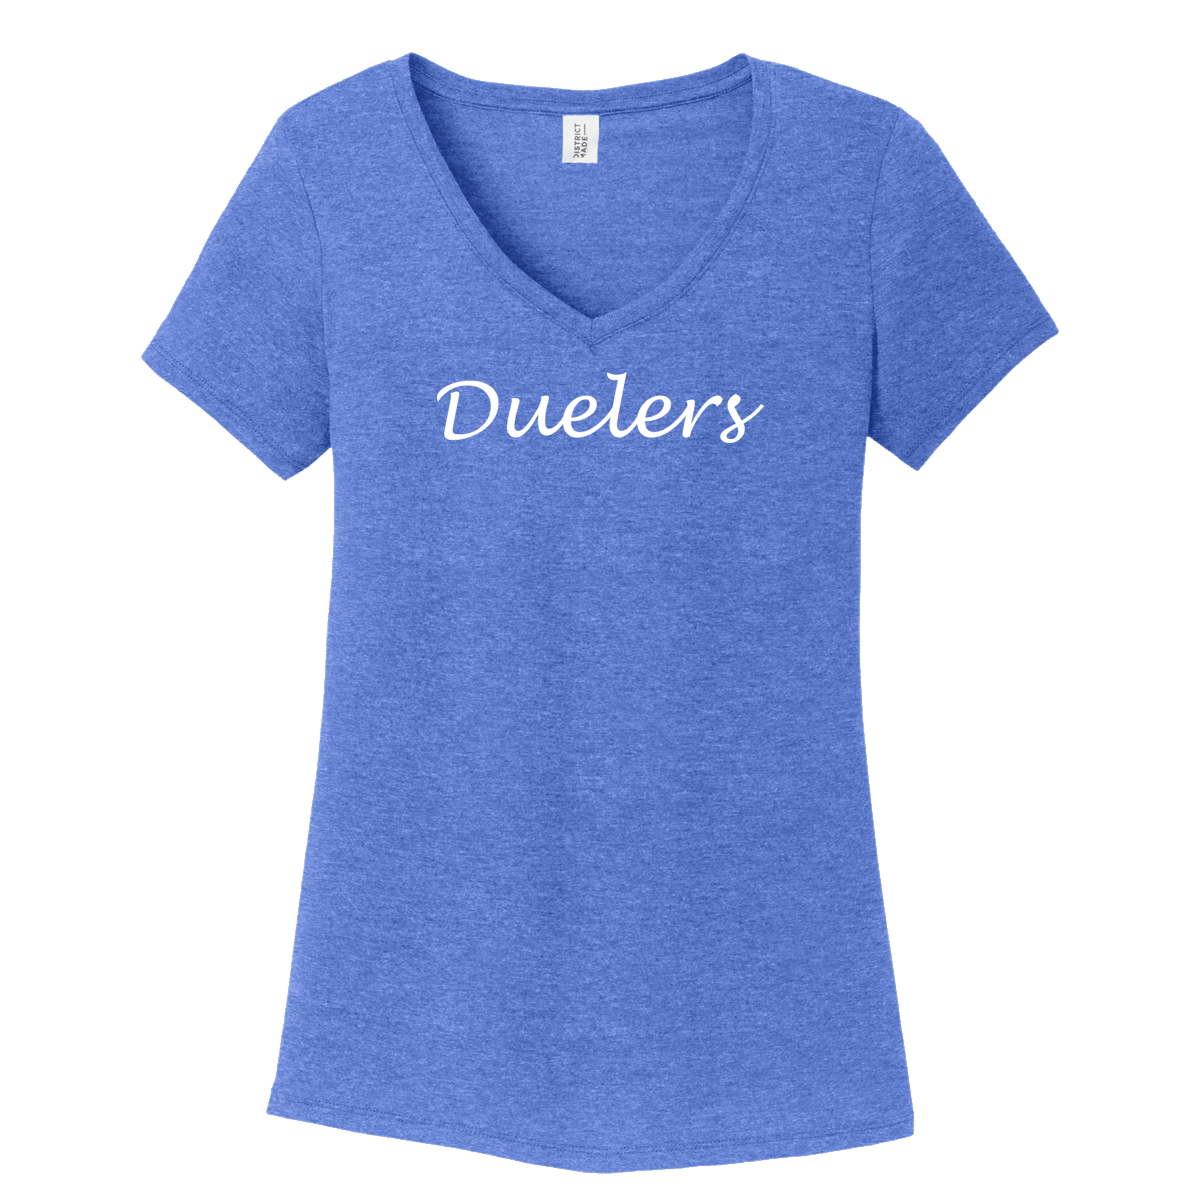 Duelers Blue Ladies V-neck Tee